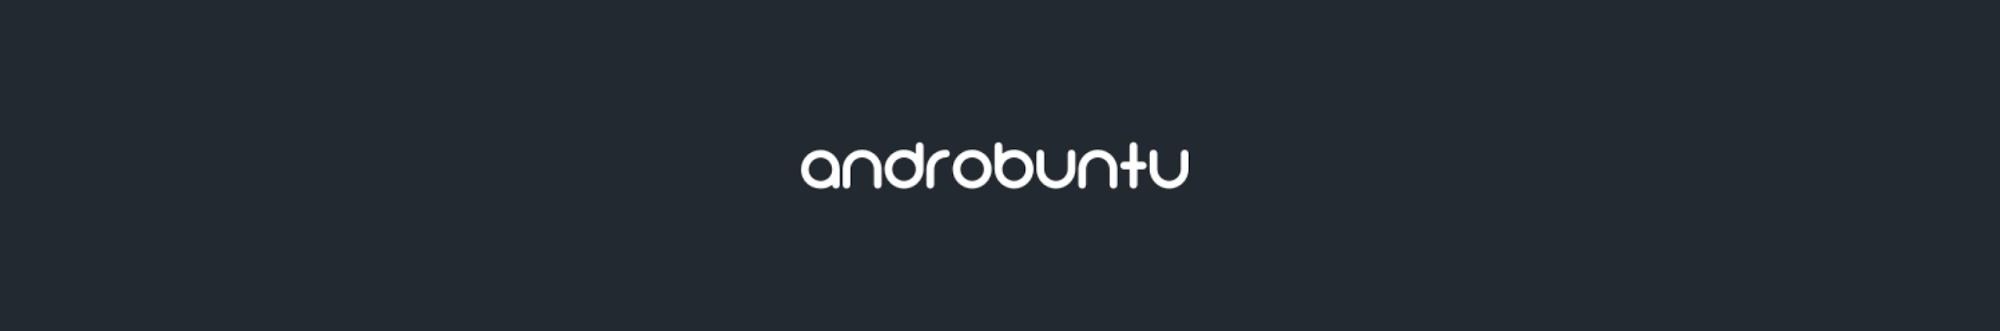 Androbuntu Media